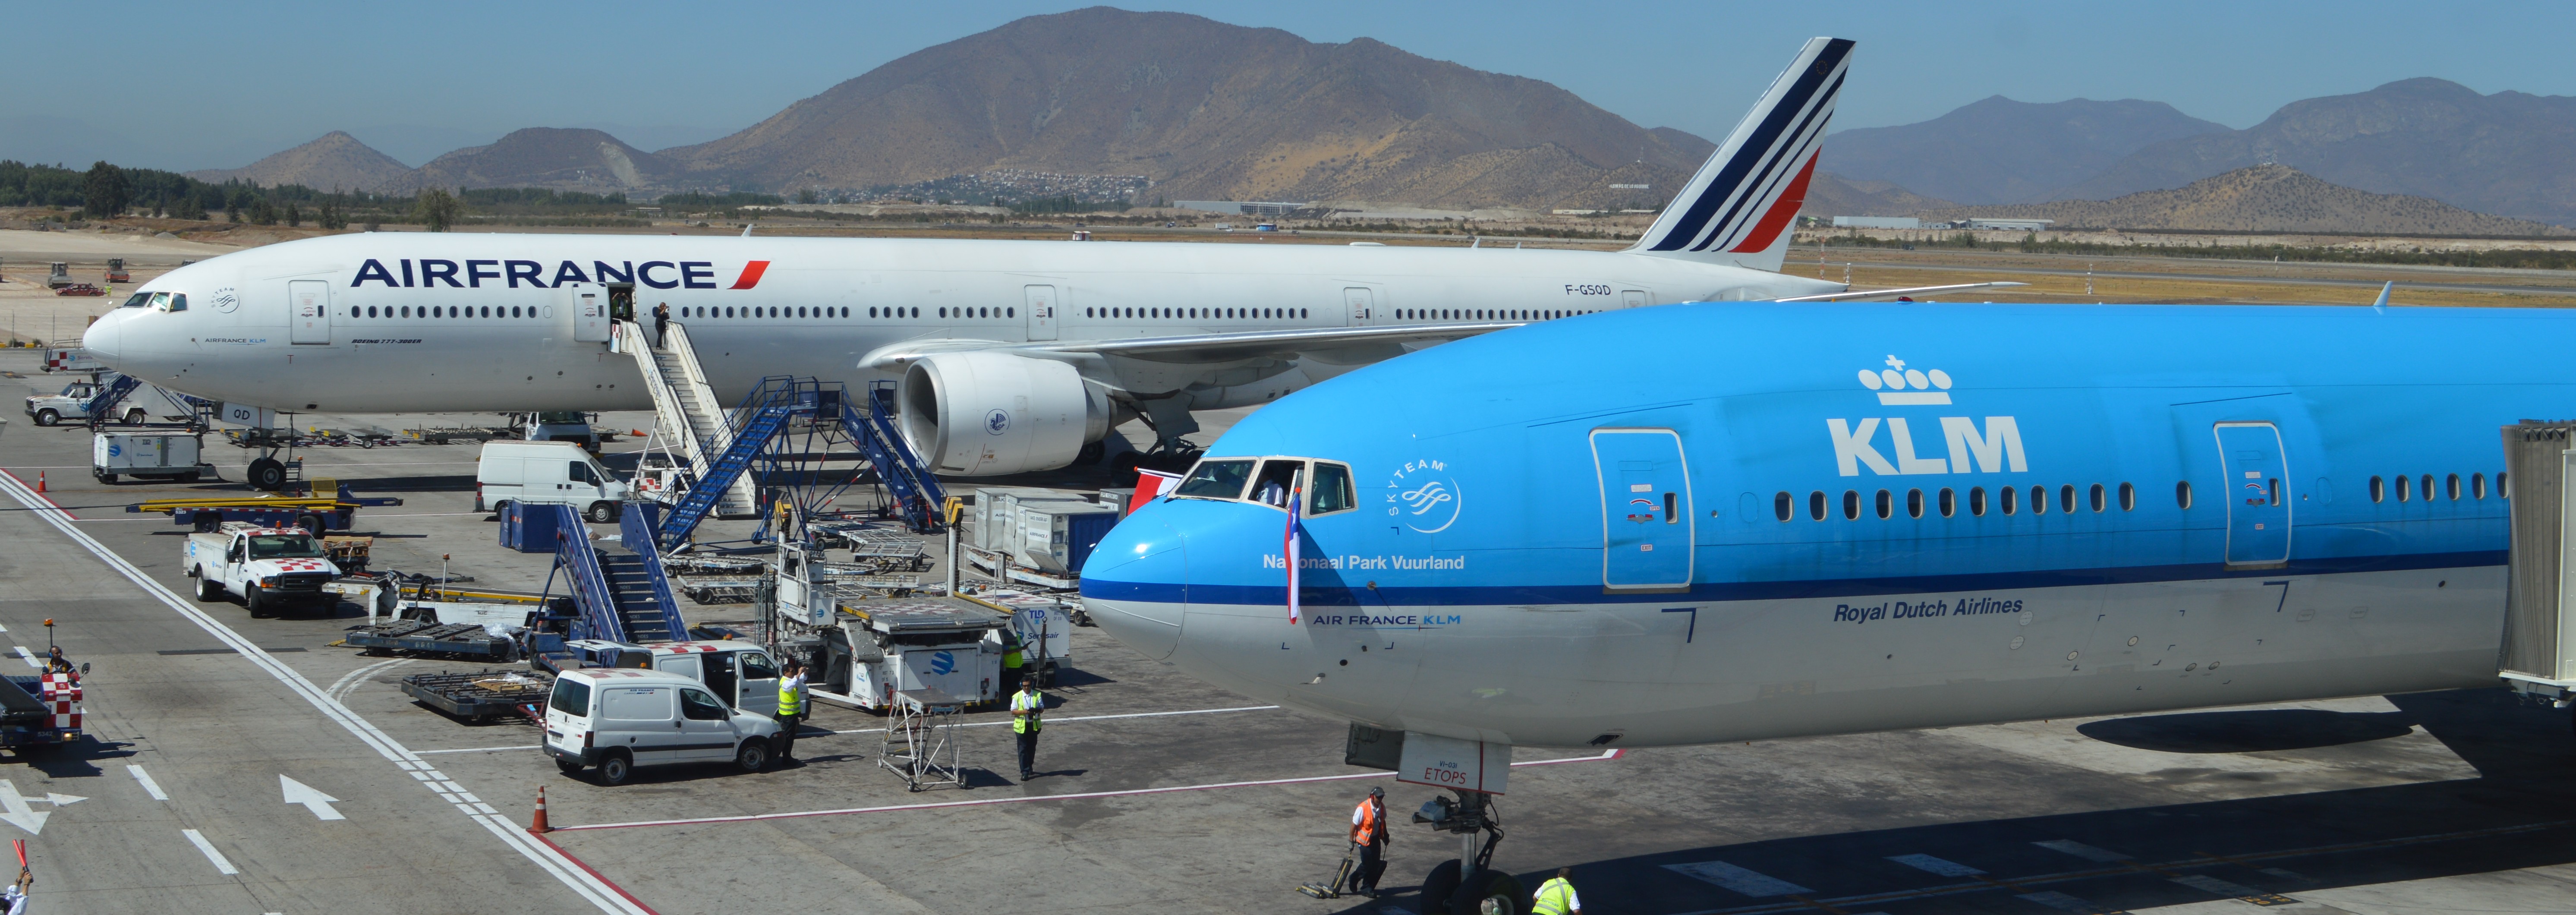 Resultado de imagem para France-KLM